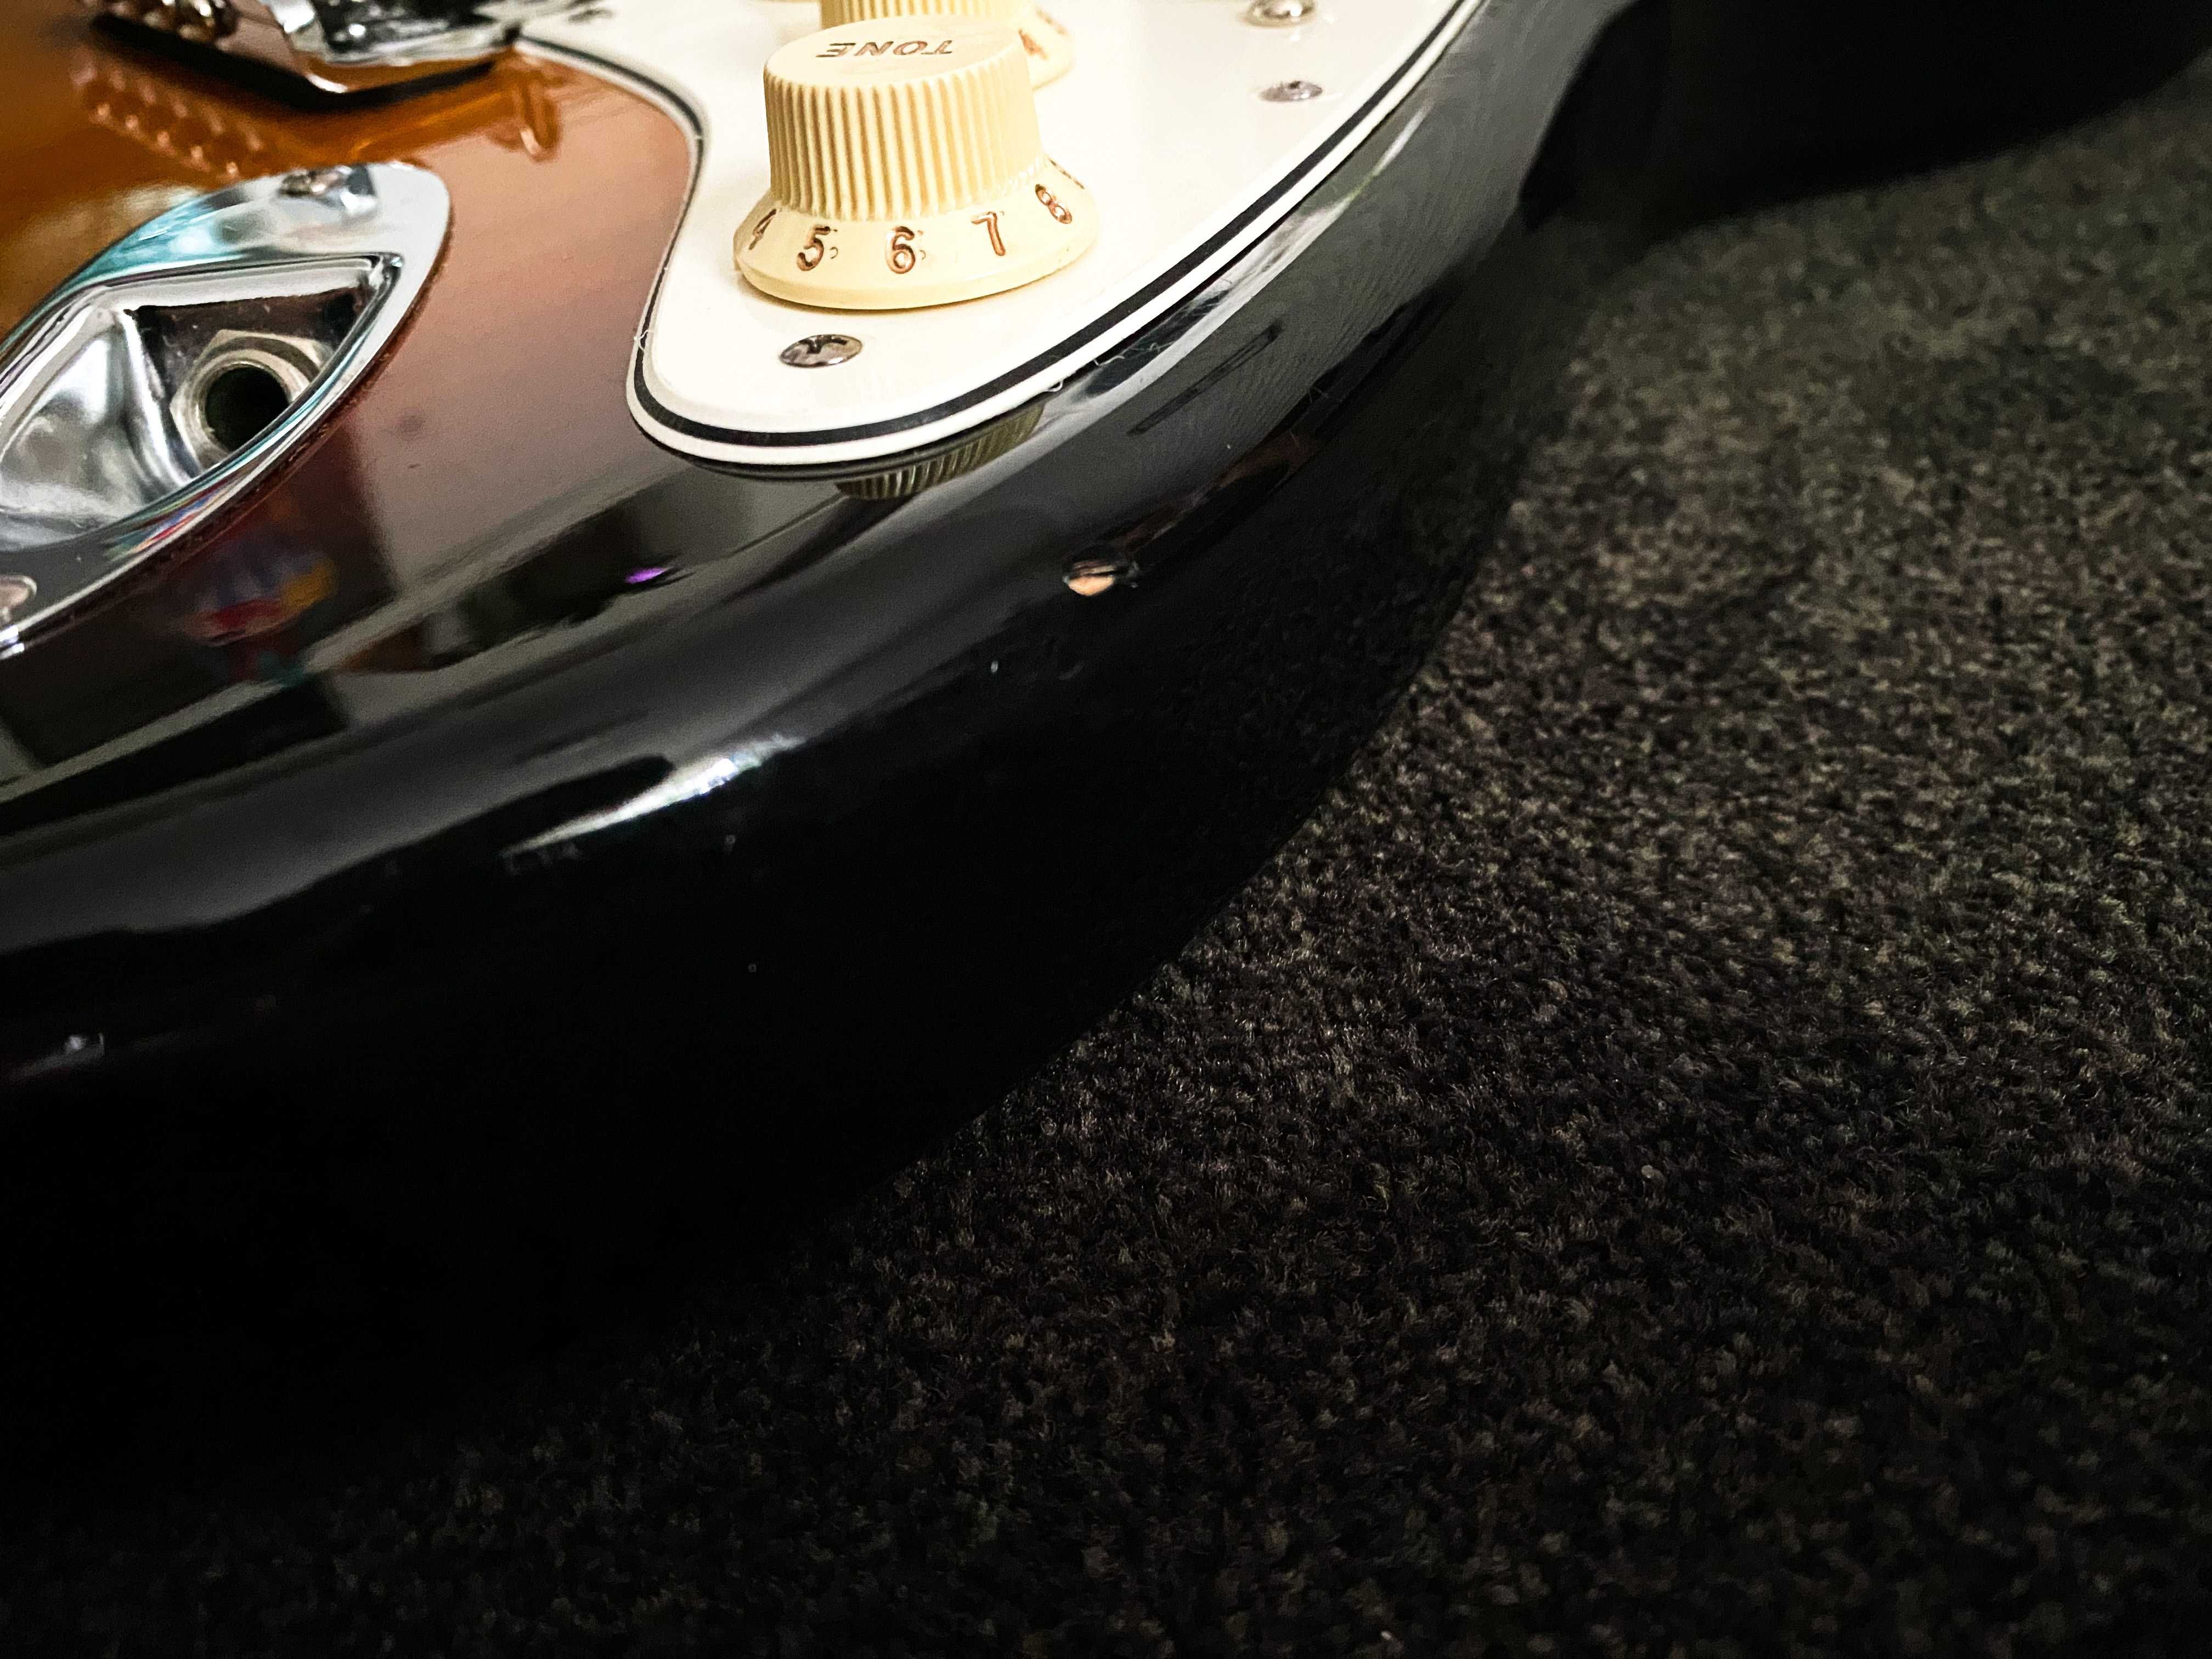 Fender American Standard Stratocaster 3-Color Sunburst 2008 + CASE